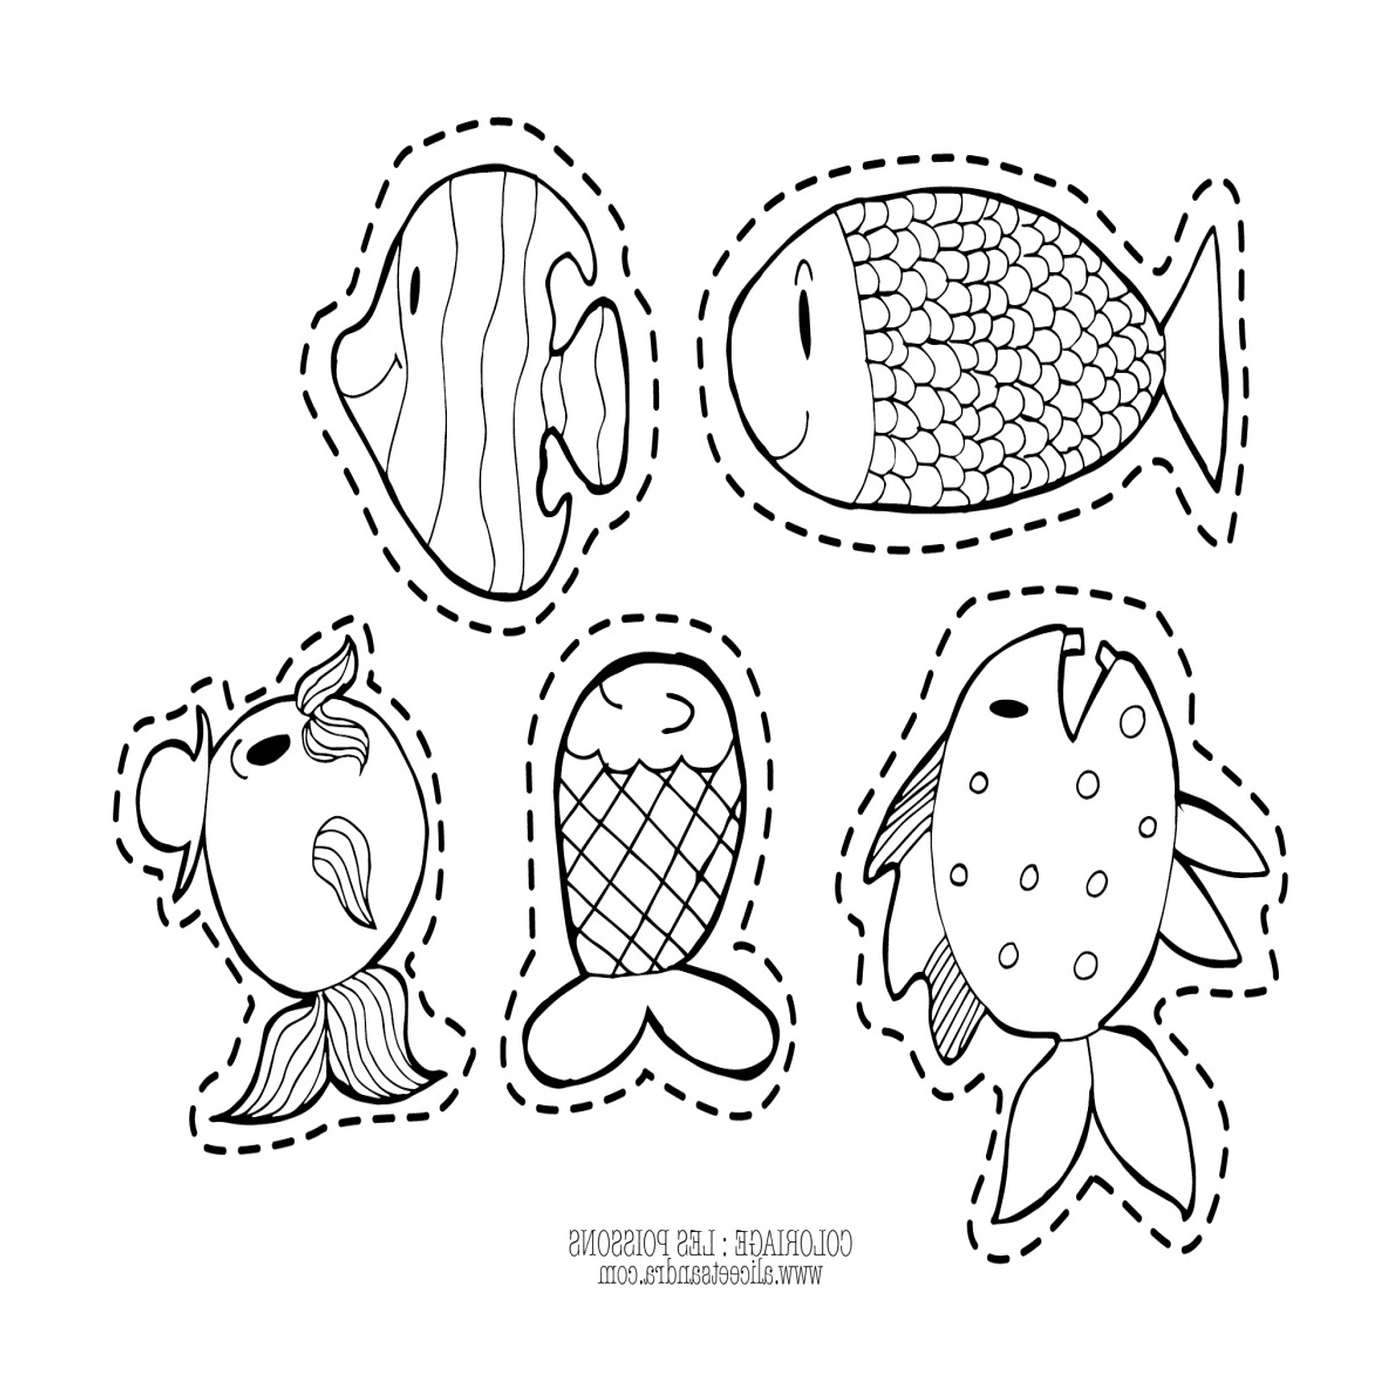  Cinco peixes desenhados em uma página 